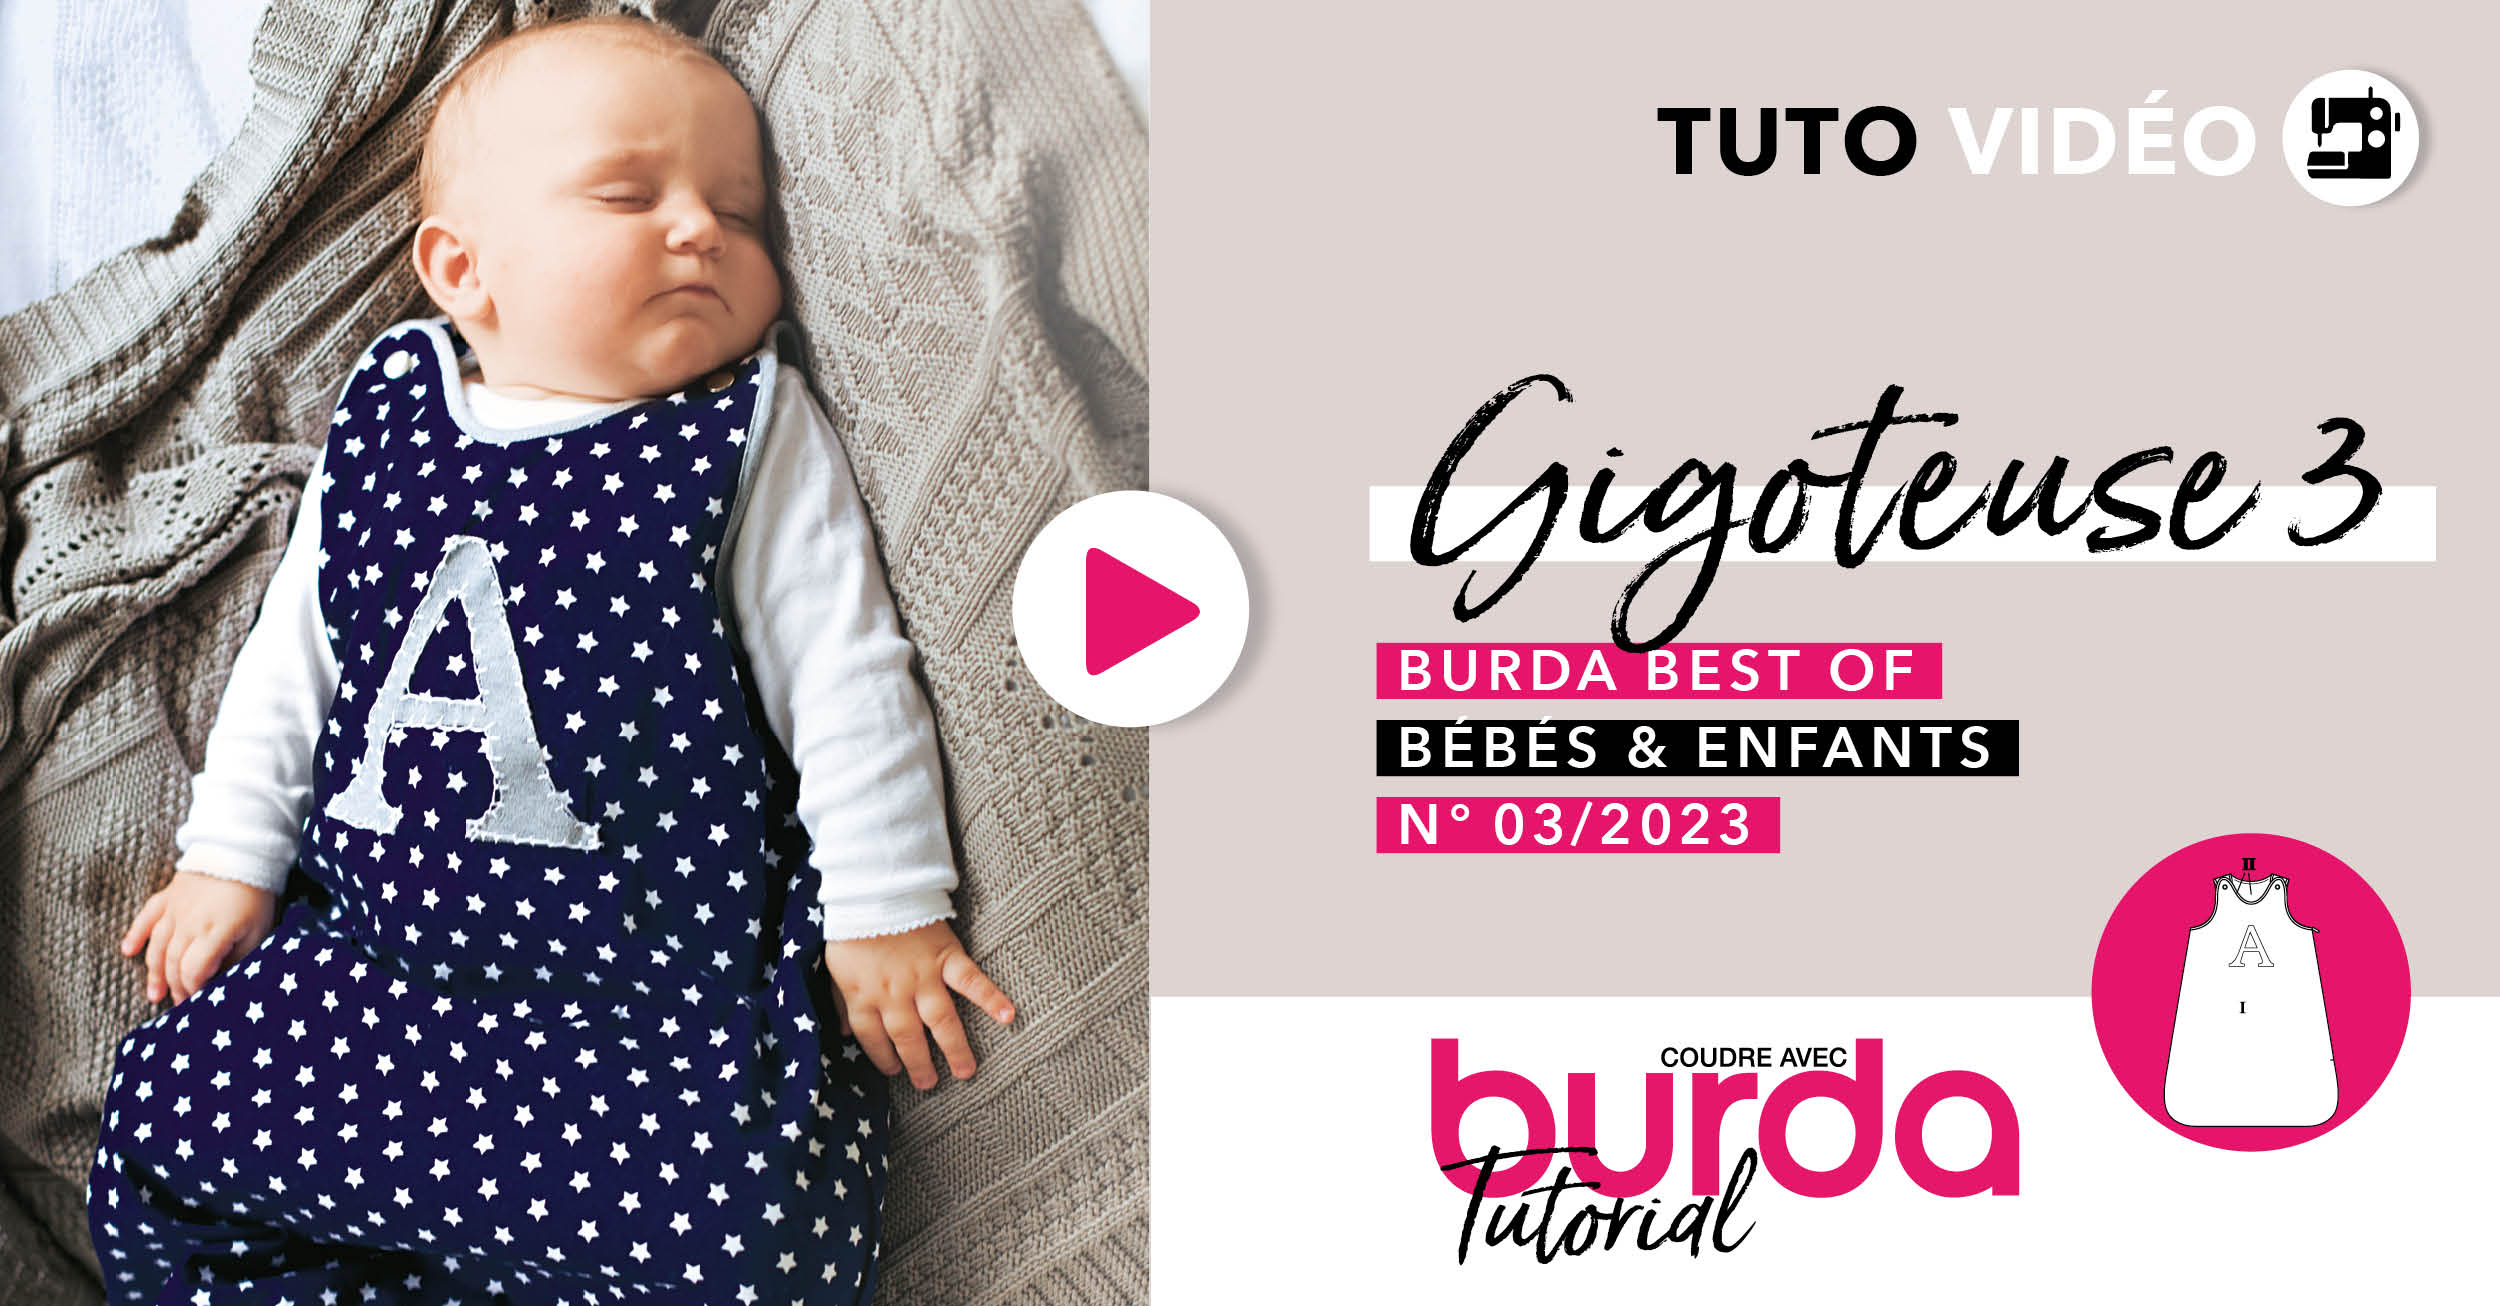 Tuto vidéo : Gigoteuse 03 - burda best of bébés & enfants 2023